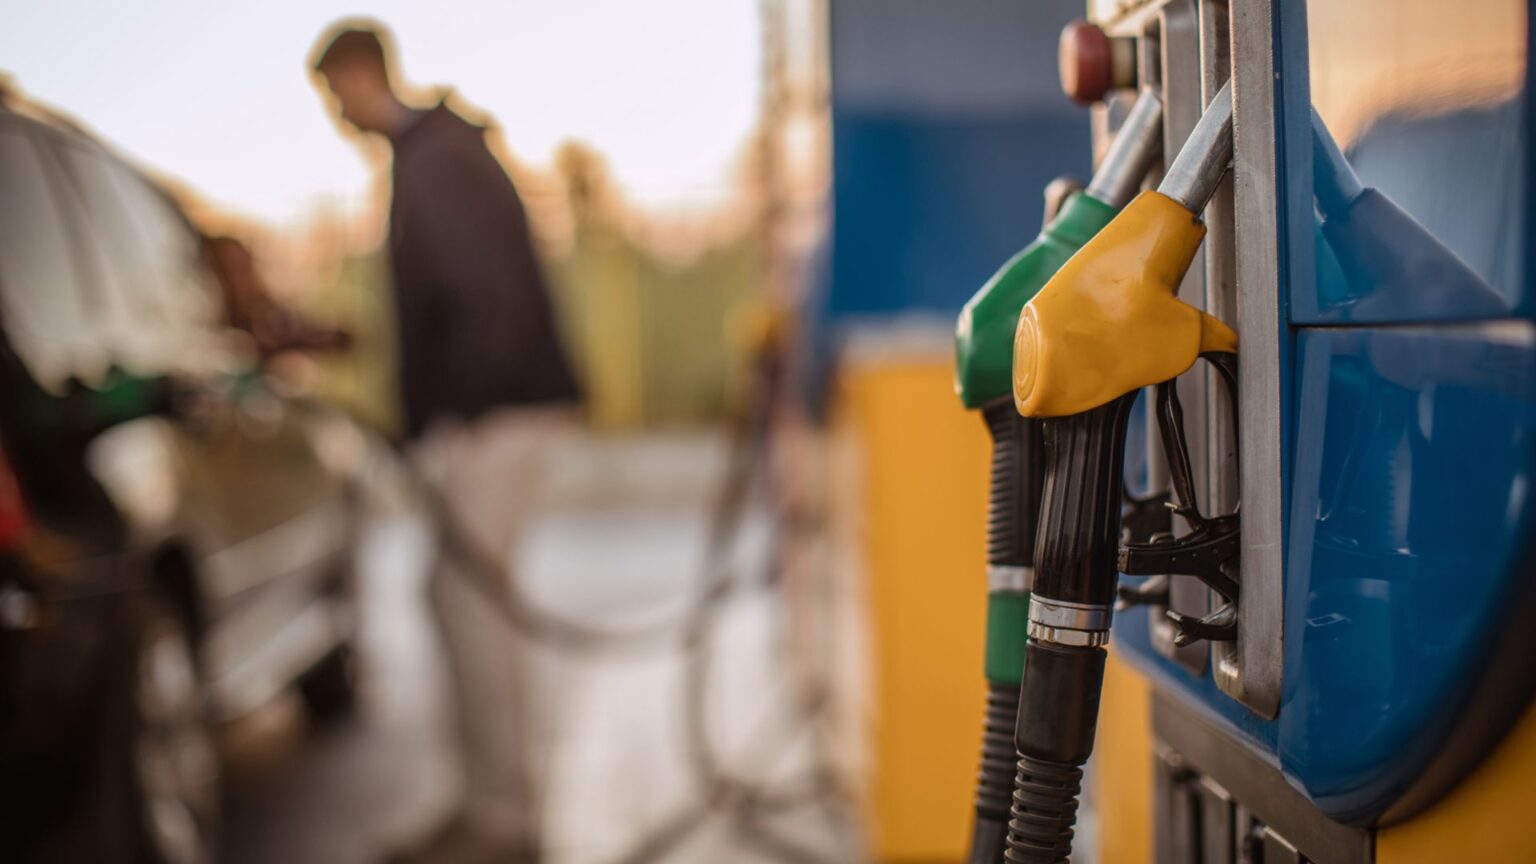 Quase 40 postos de gasolina são autuados por irregularidades em Contagem - Foto: Divulgação